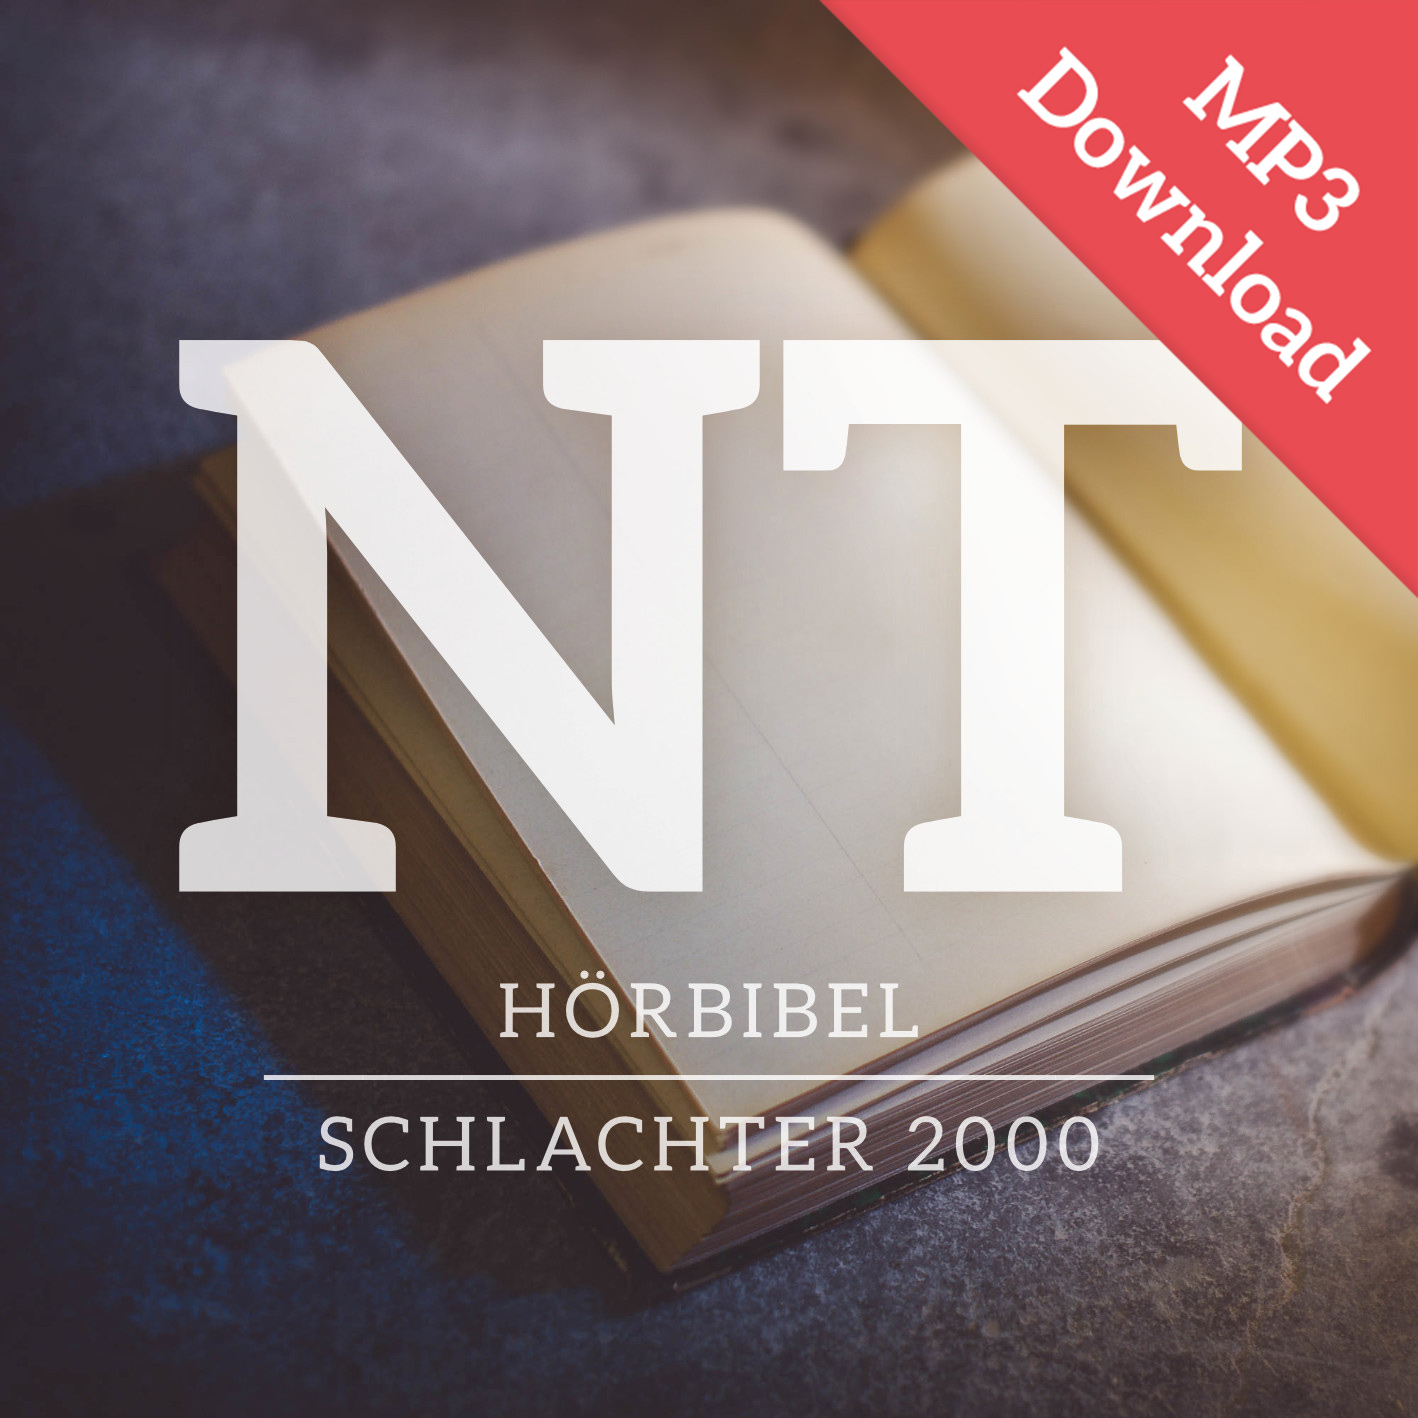 DOWNLOAD: Schlachter 2000 - Neues Testament - MP3 - Hörbibel